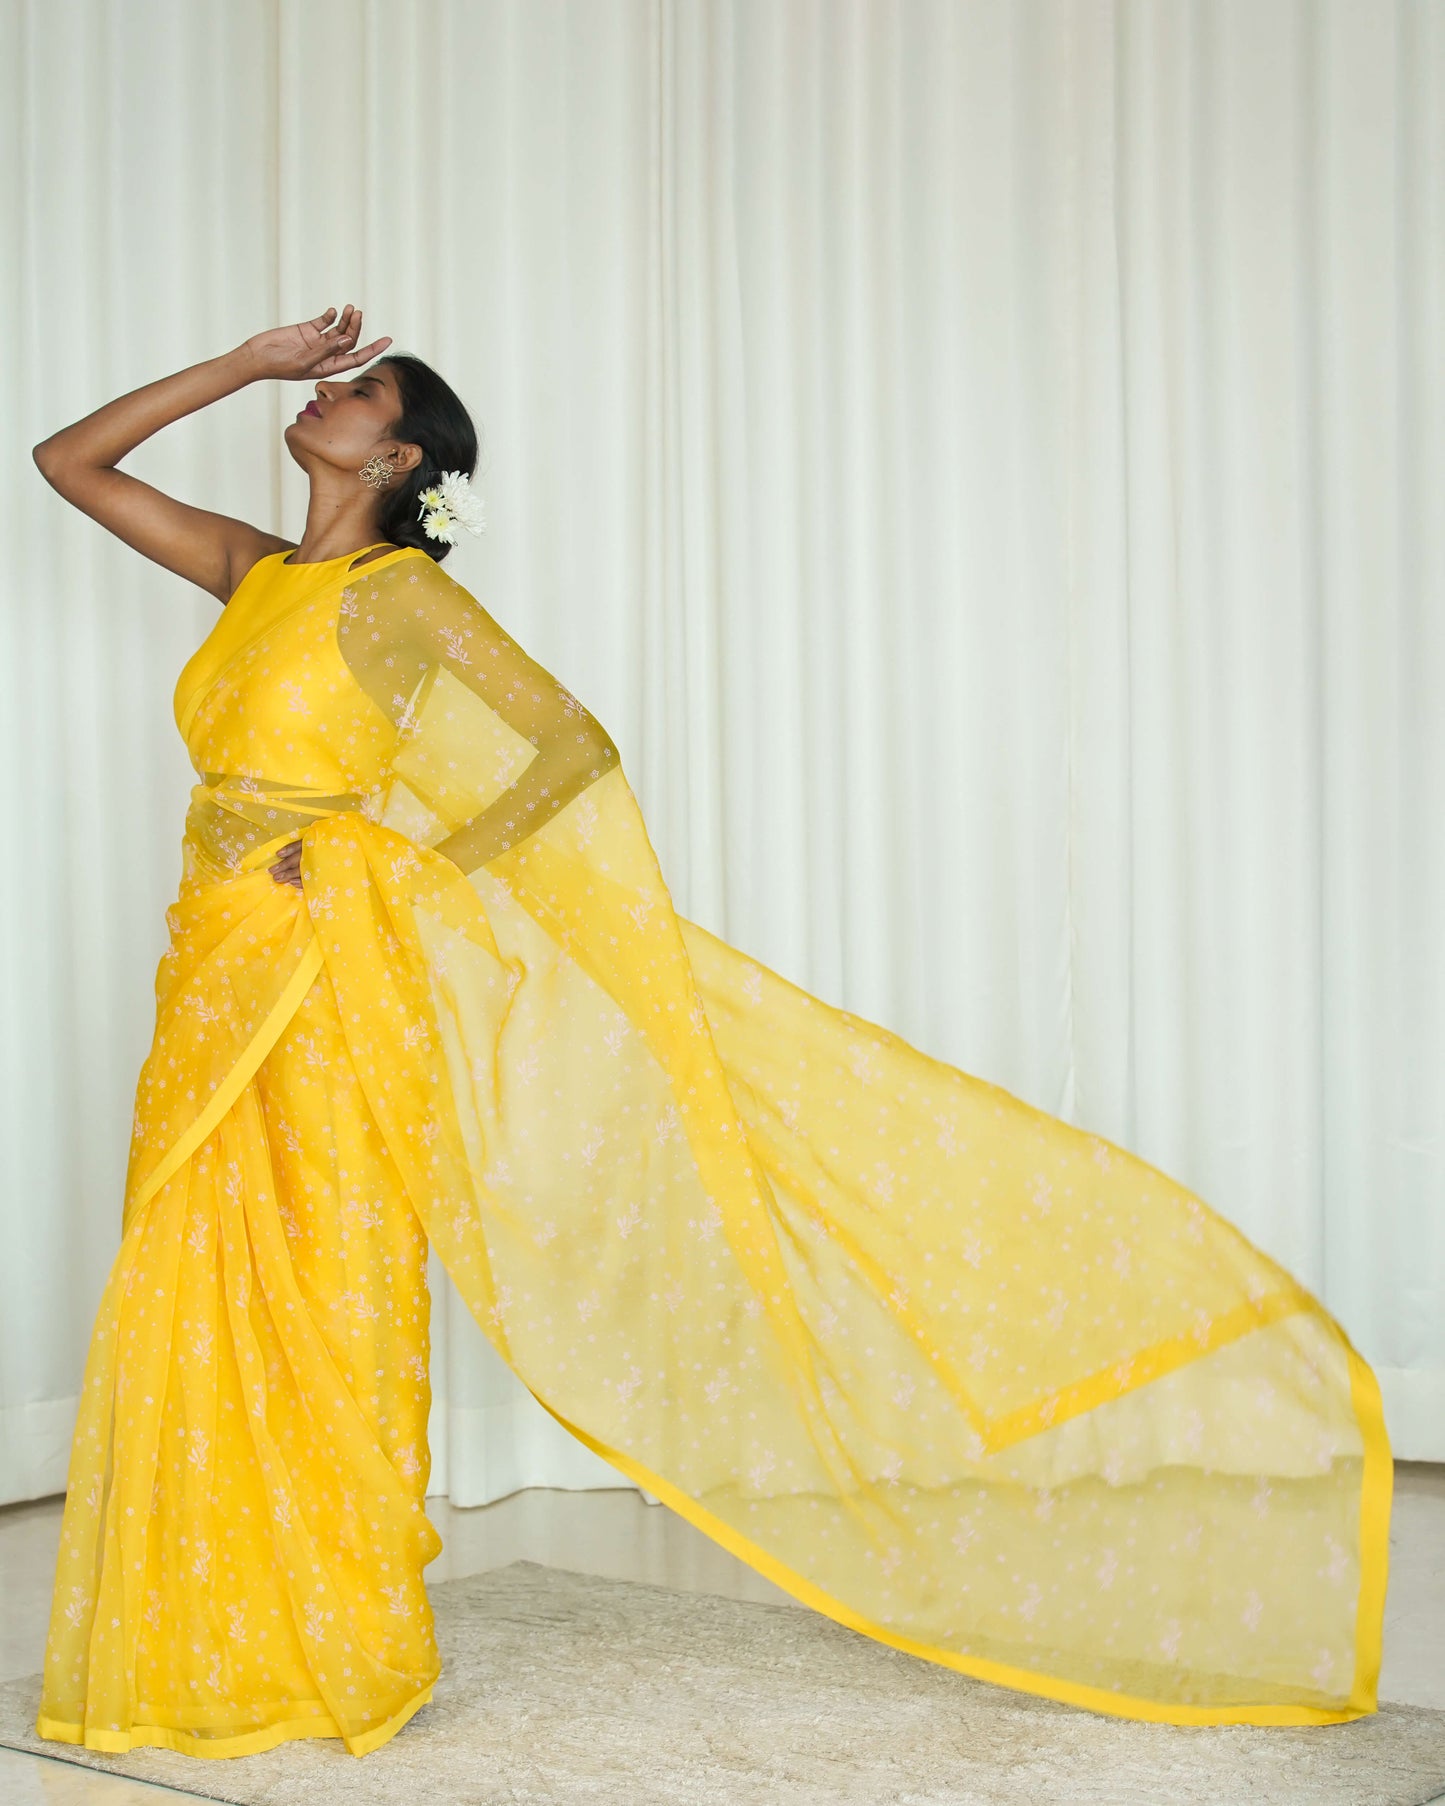 Yellow Printed Sari